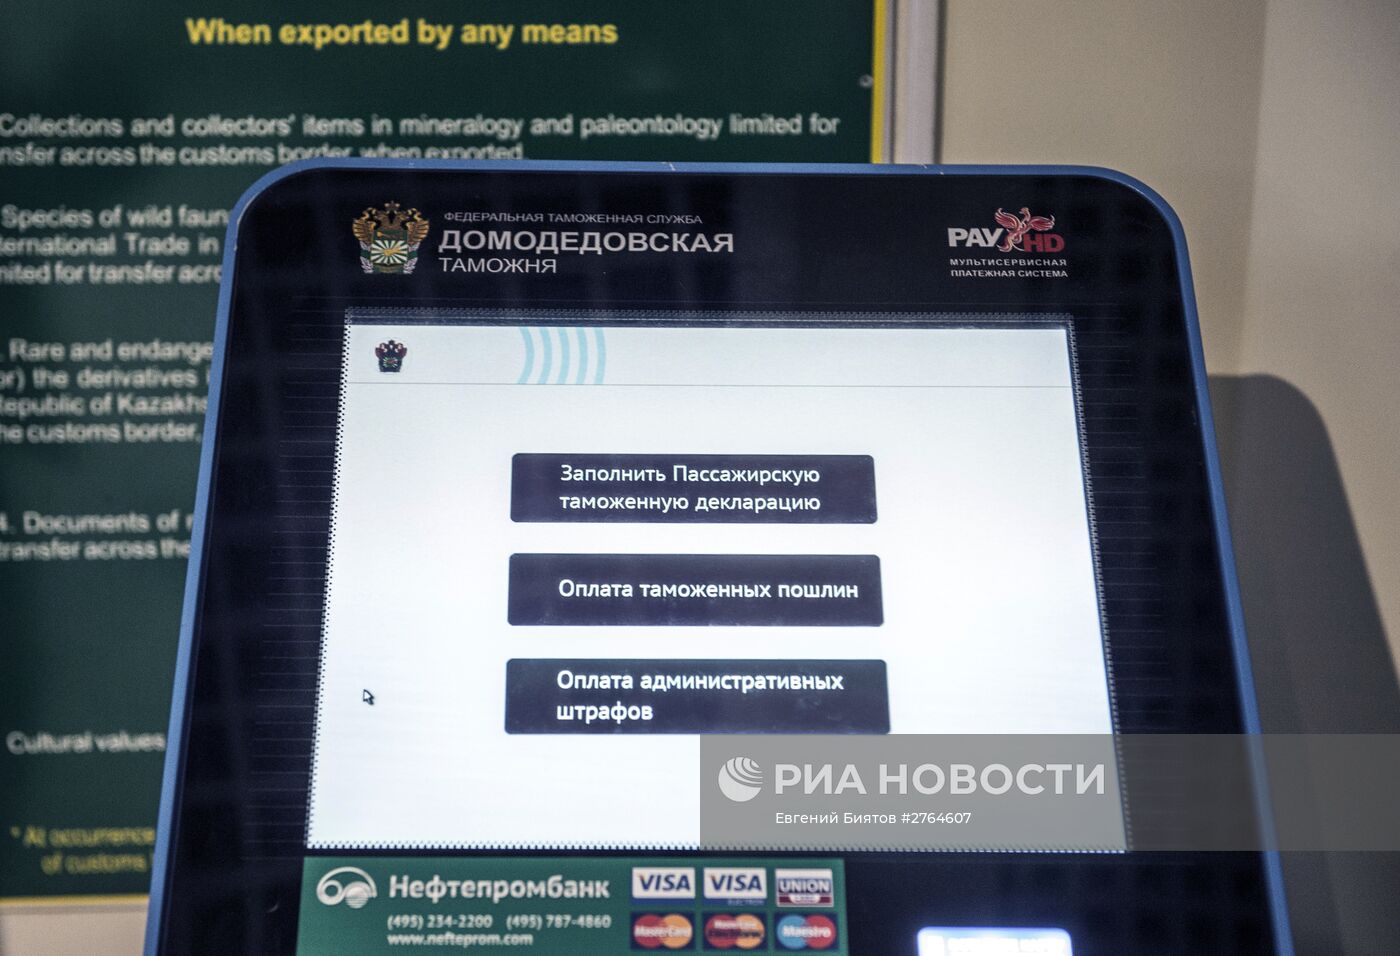 Ввод в эксплуатацию таможенного терминала в зале международного аэропорта "Домодедово"